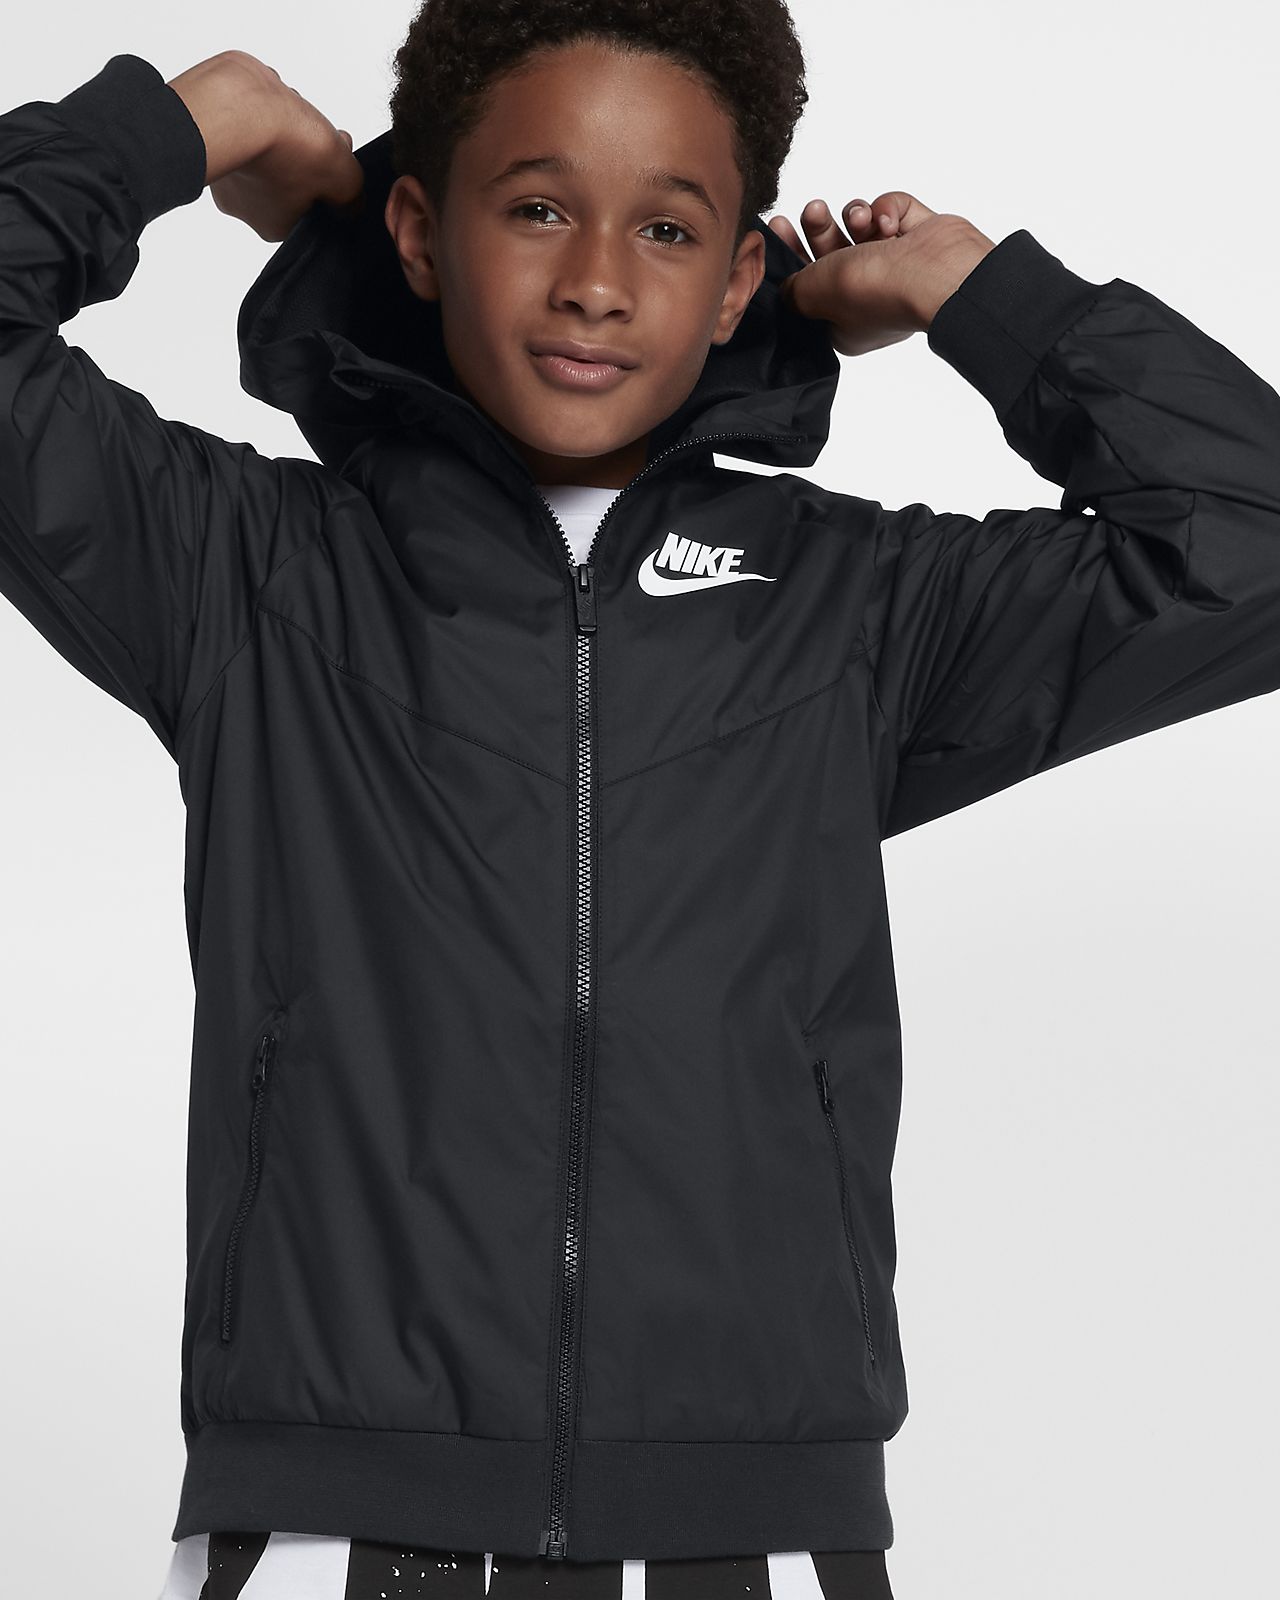 Nike Windrunner Black And Grey | Bruin Blog